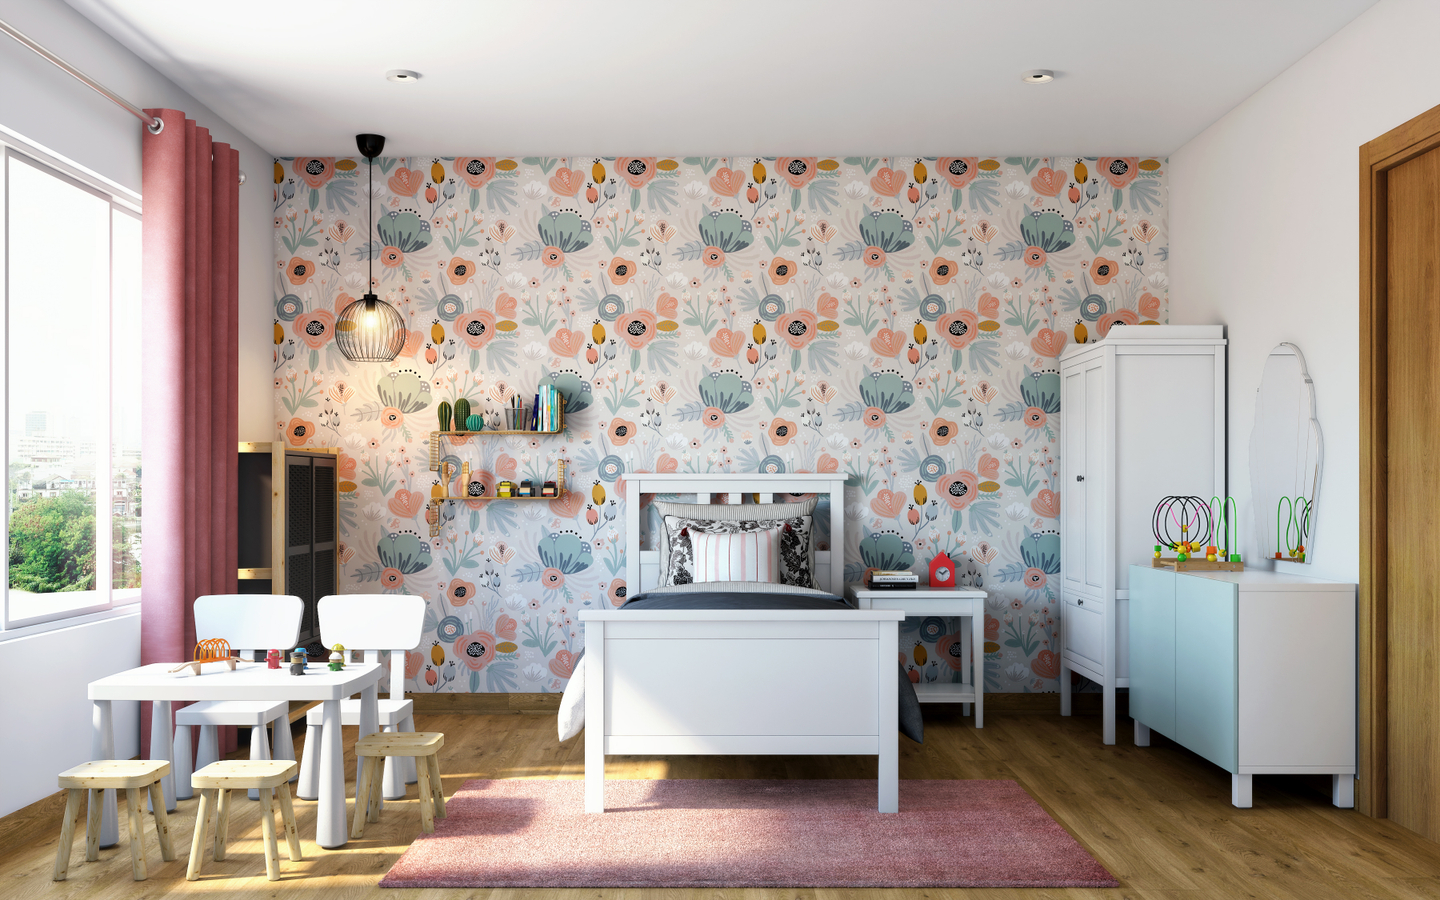 Modern Kid's Bedroom Design With Floral Wallpaper - Livspace